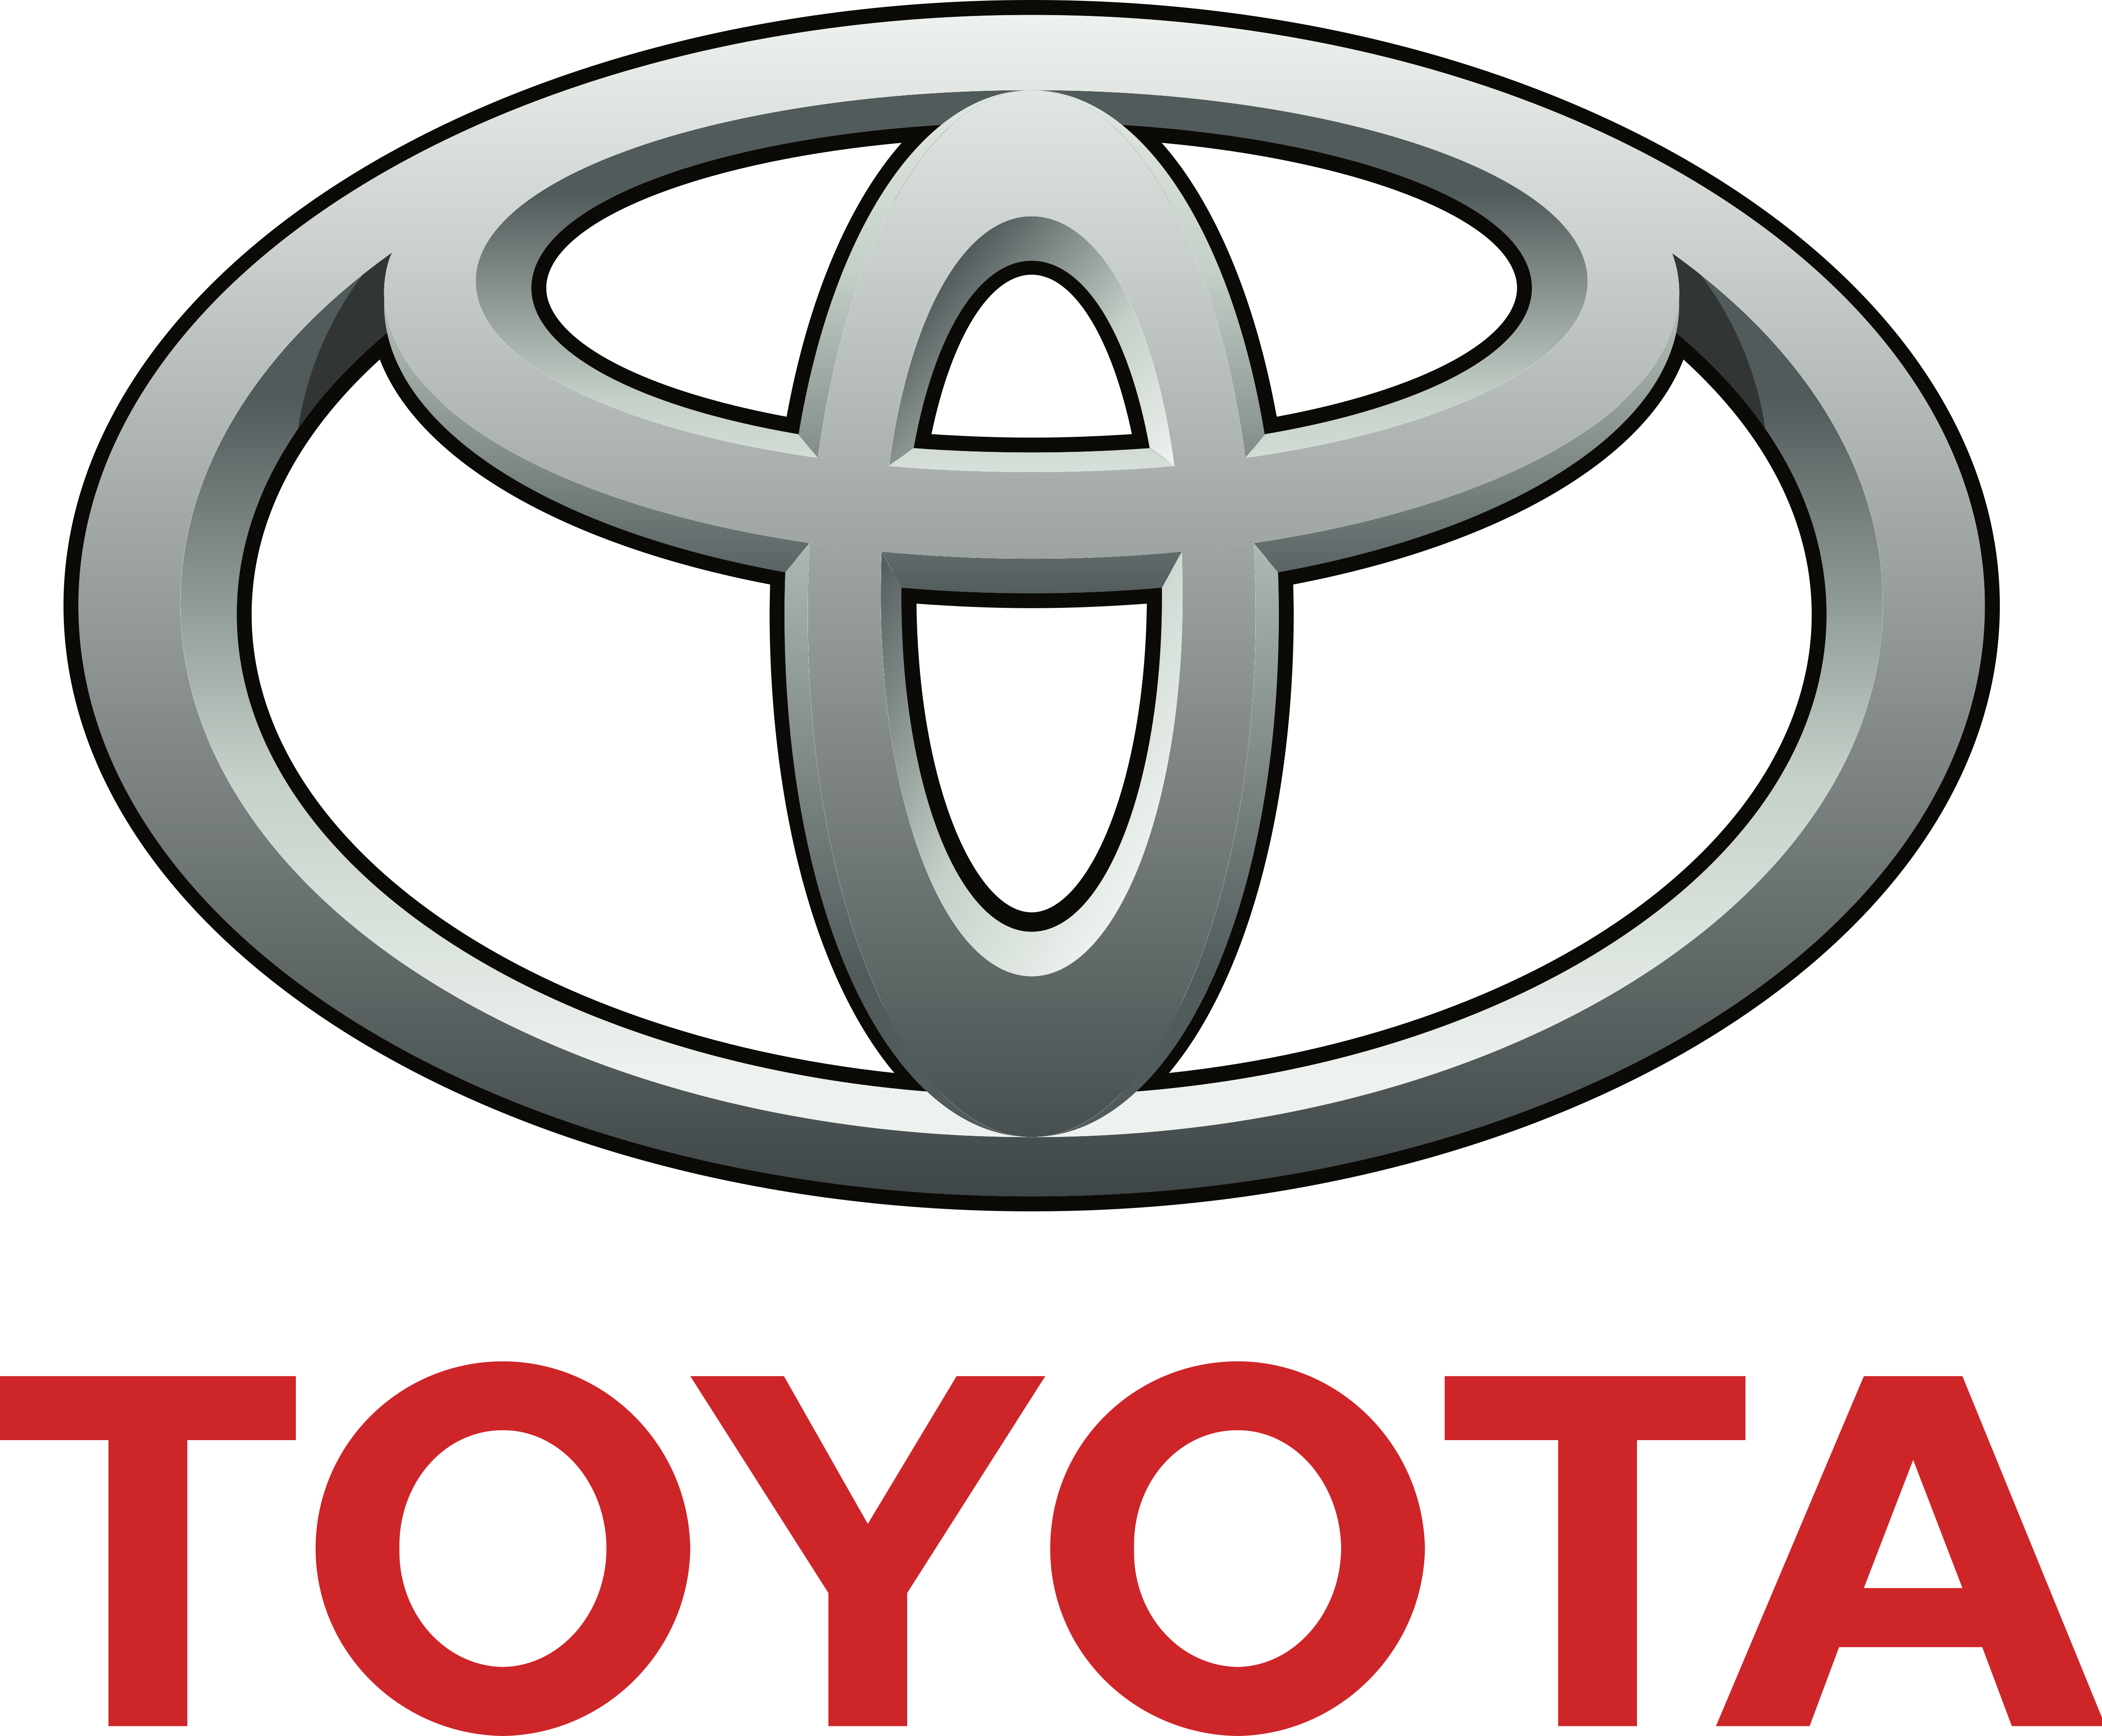 Toyota – Logos Download